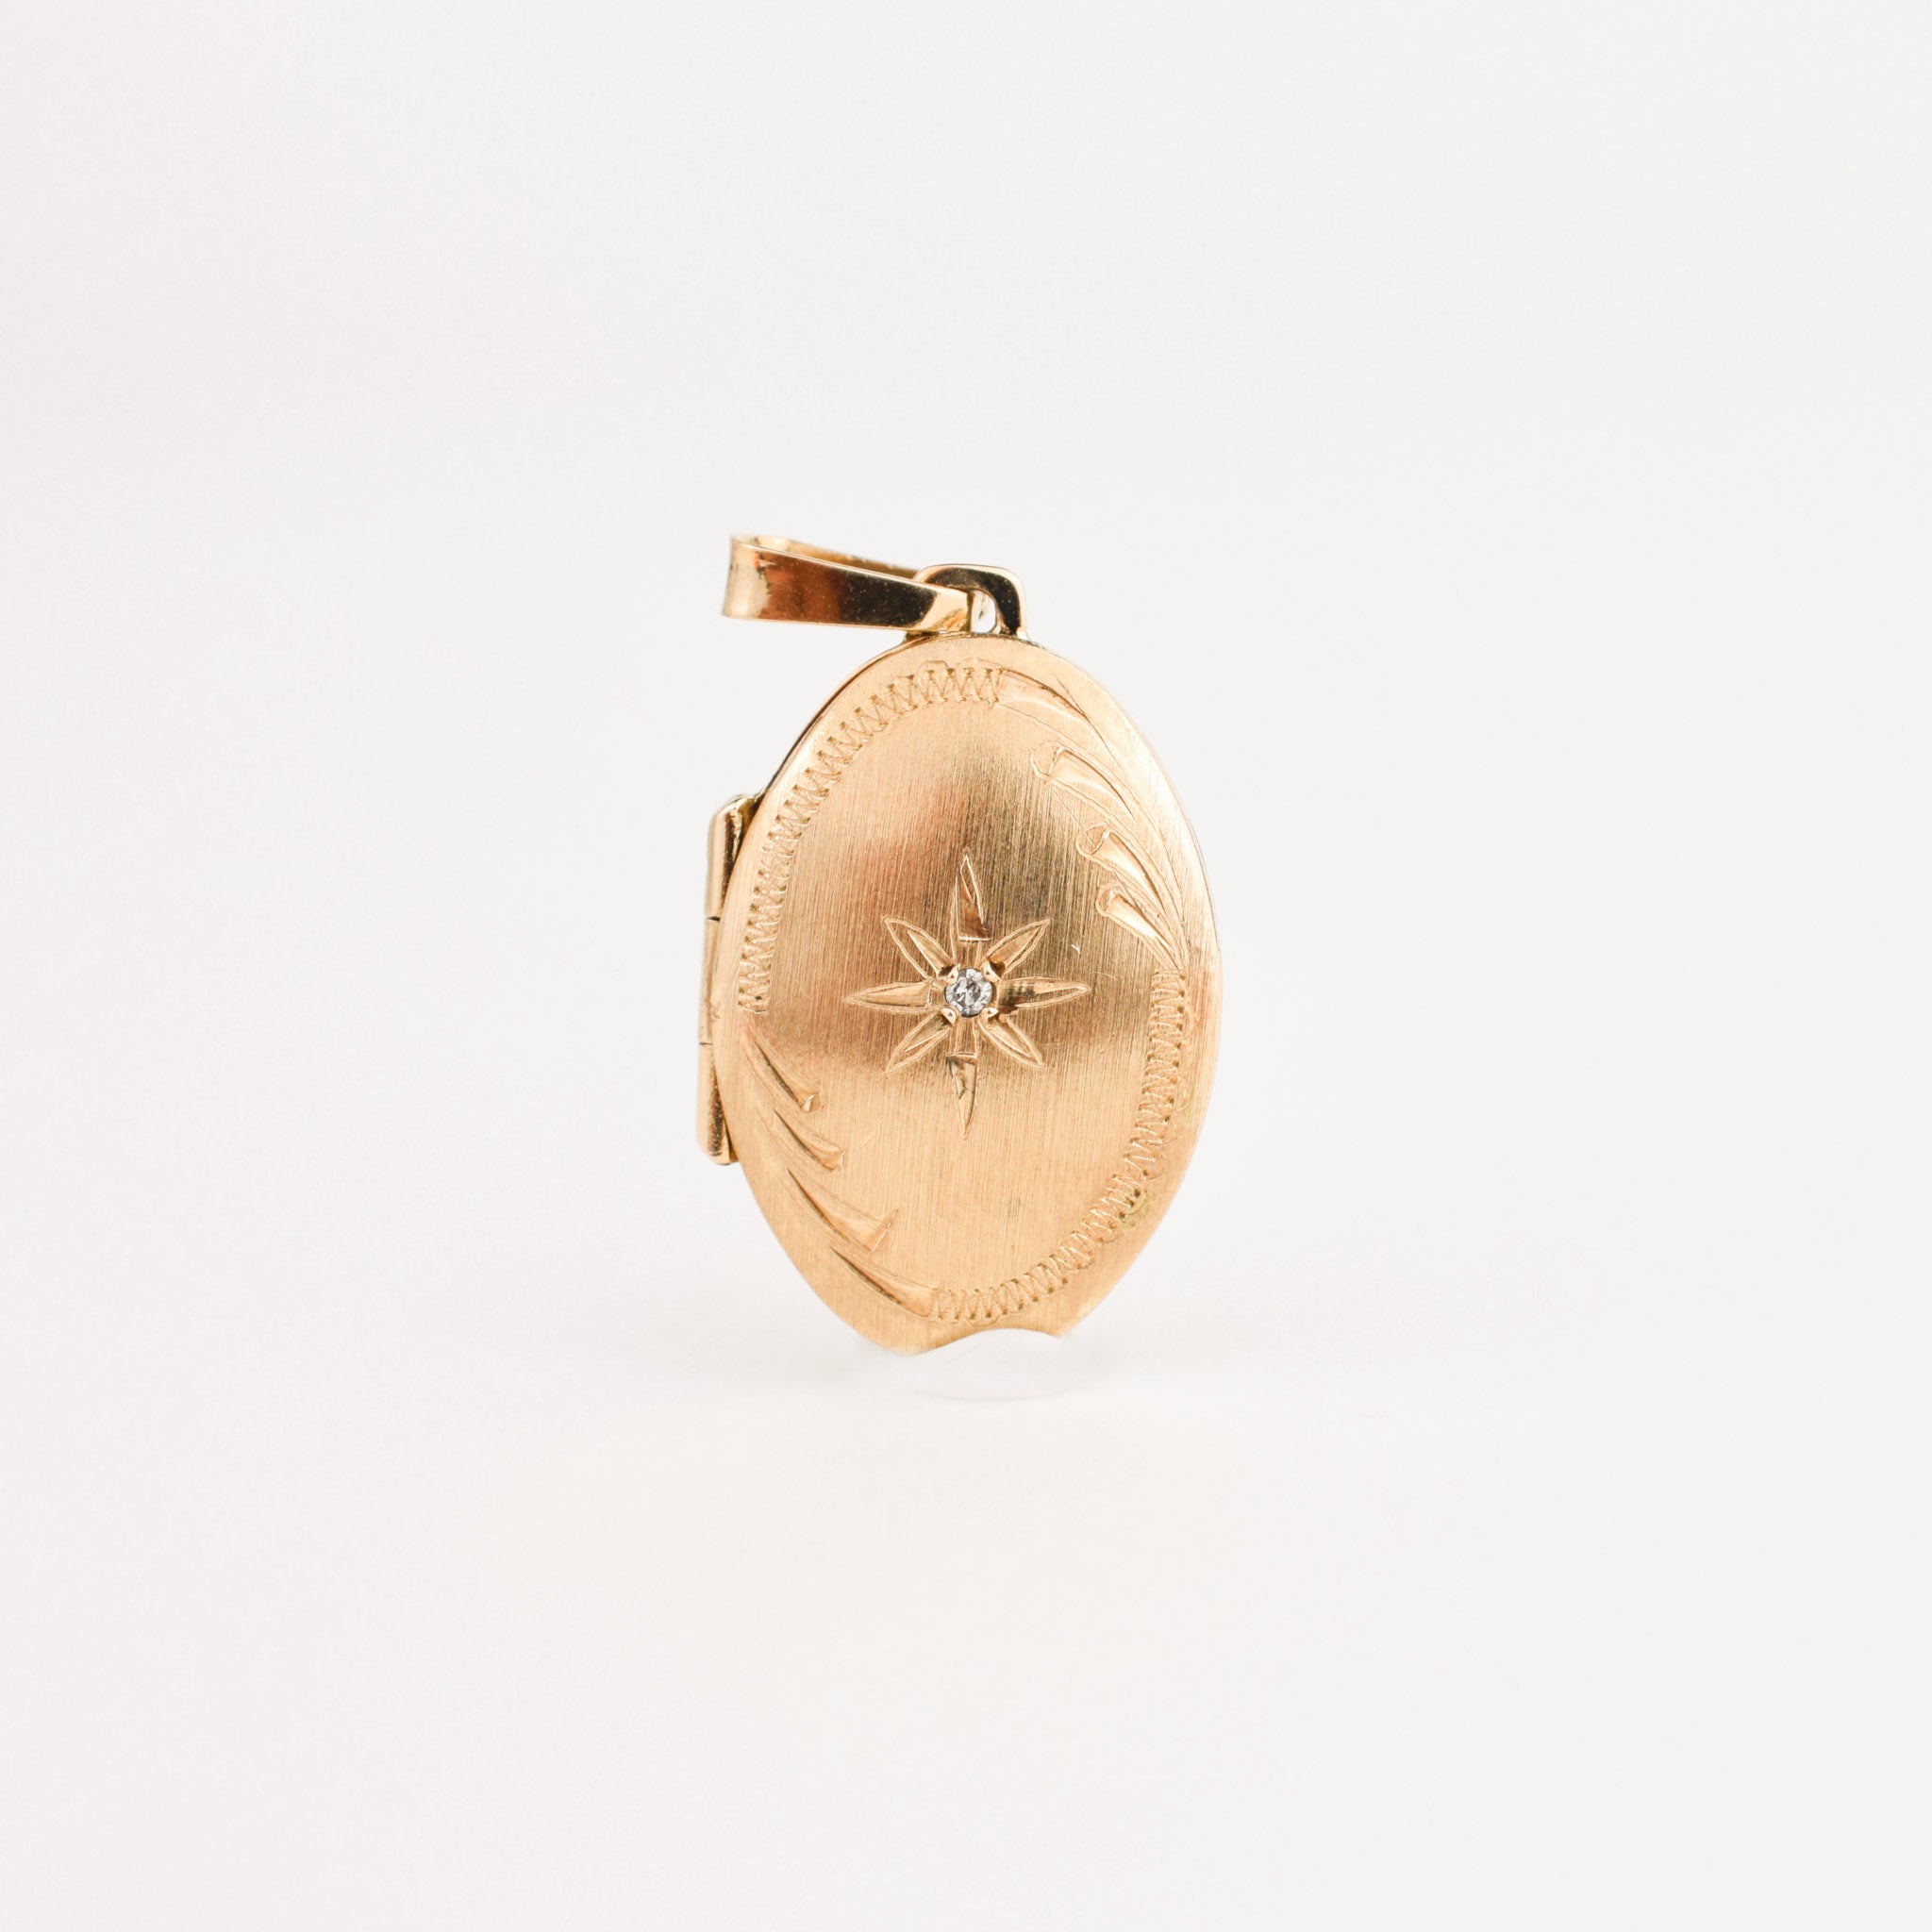 vintage gold brushed locket pendant, folklor vintage jewelry canada